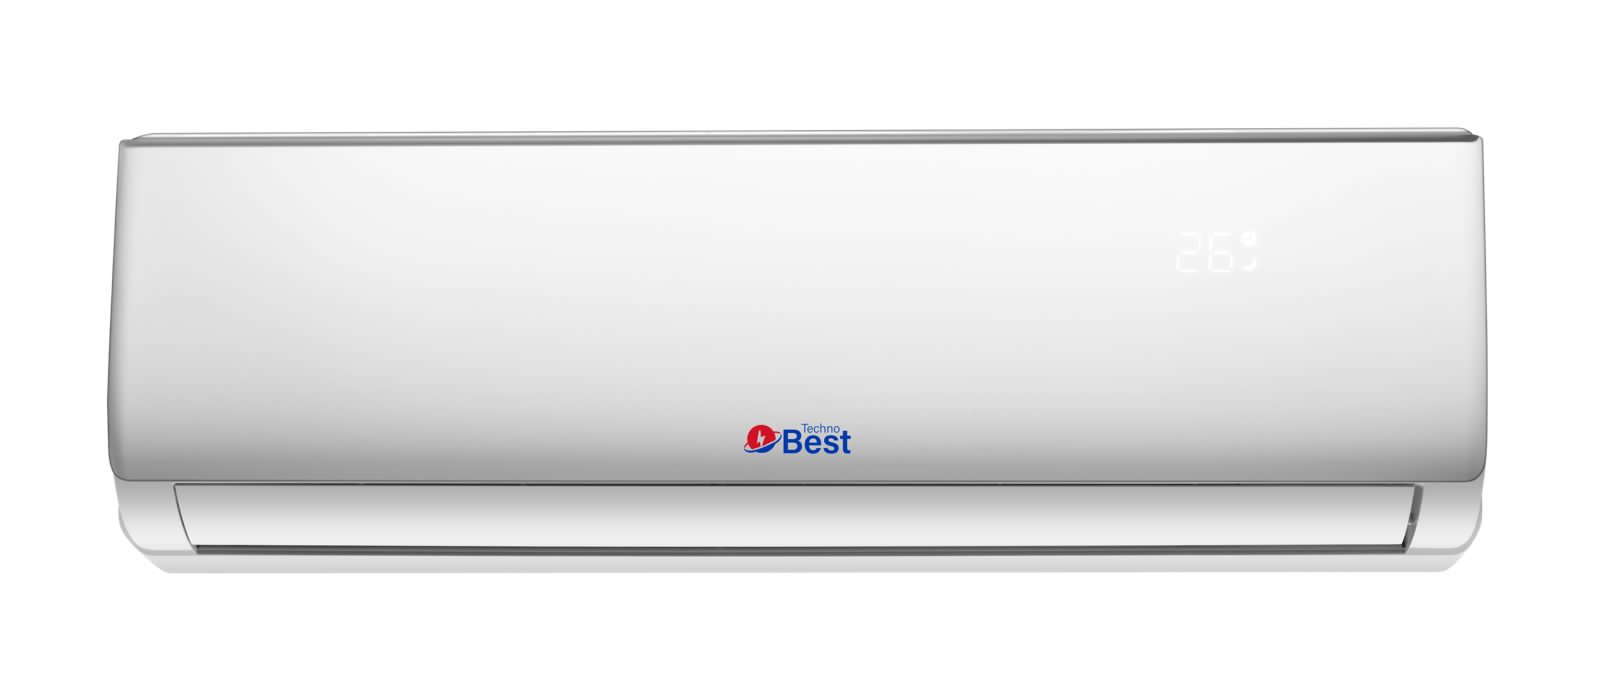 TECHNO BEST Split Air Conditioner, 21600 BTU, Hot/Cold, 4-Ways-Auto-Air, Quiet Sound - BSAC-124H